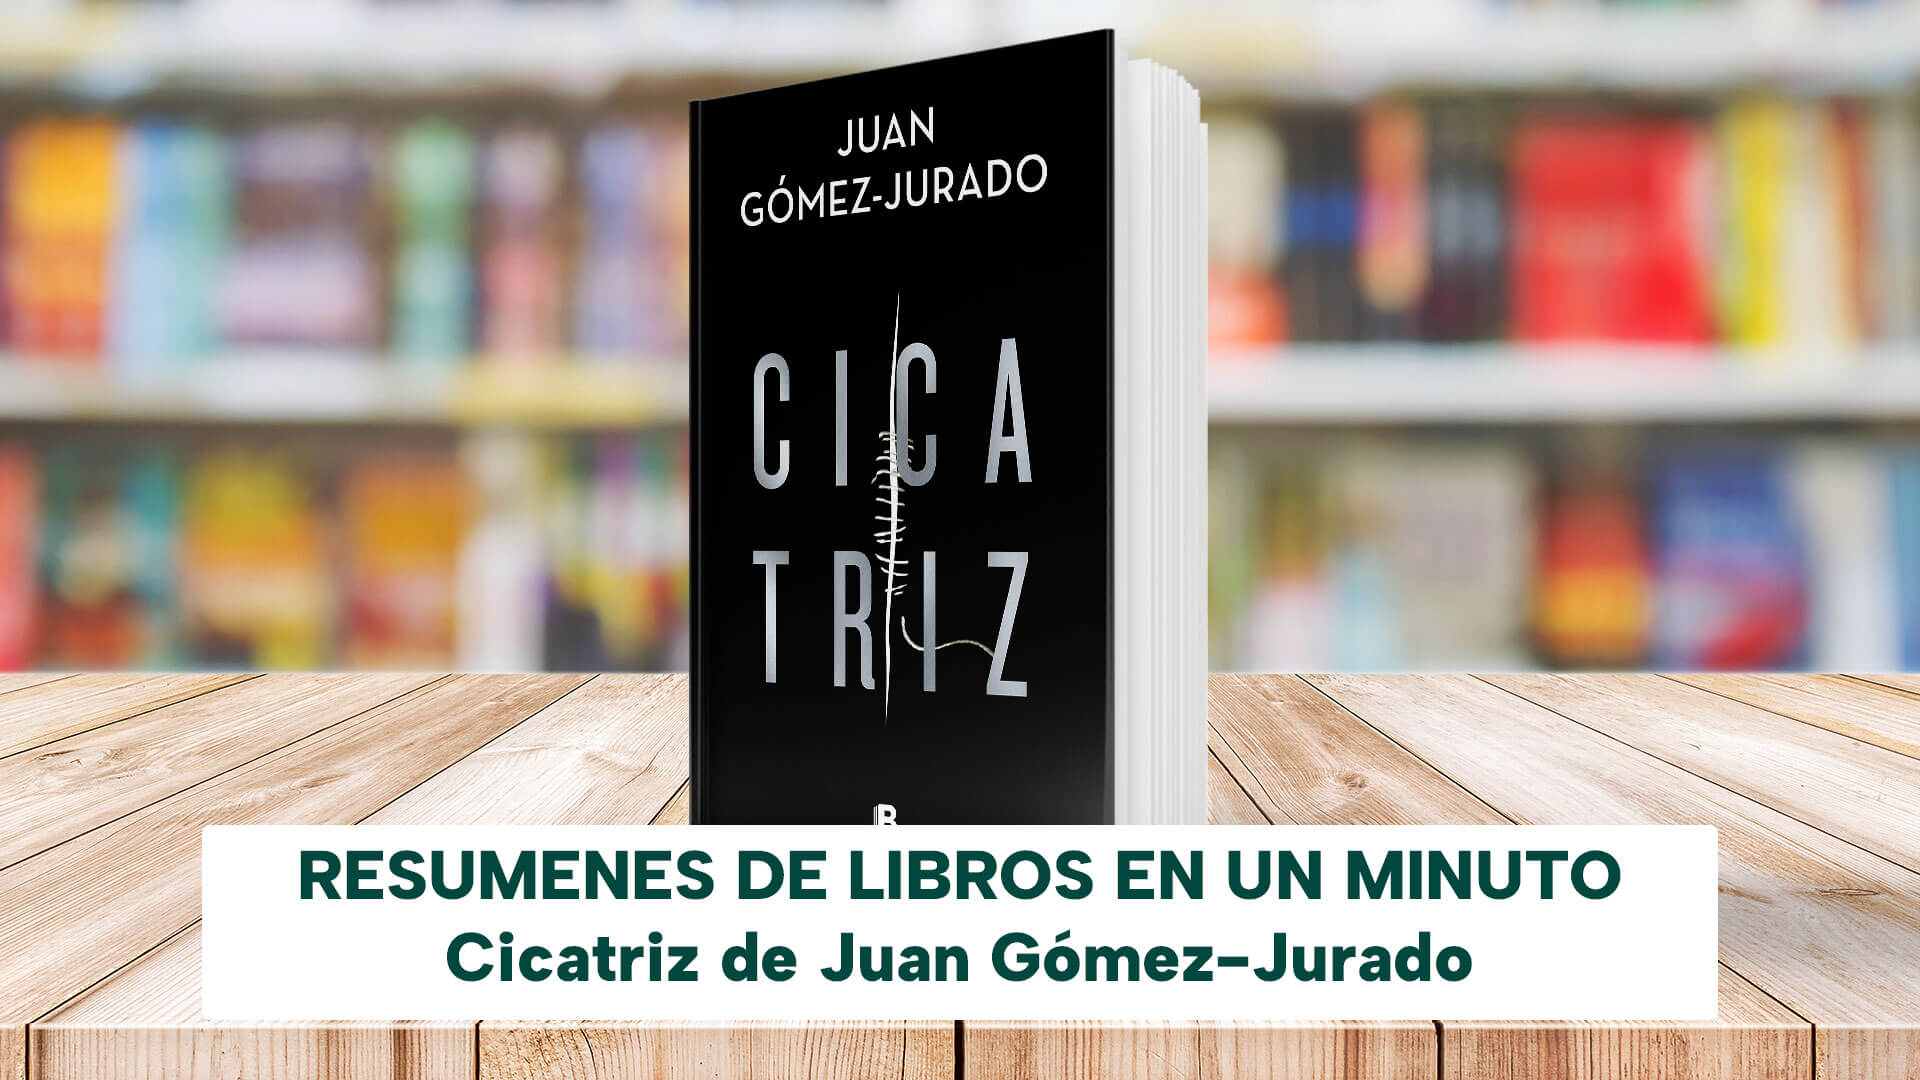 Cicatriz, de Juan Gómez-Jurado  Cicatrices, Ciencias de la información,  Generos literarios